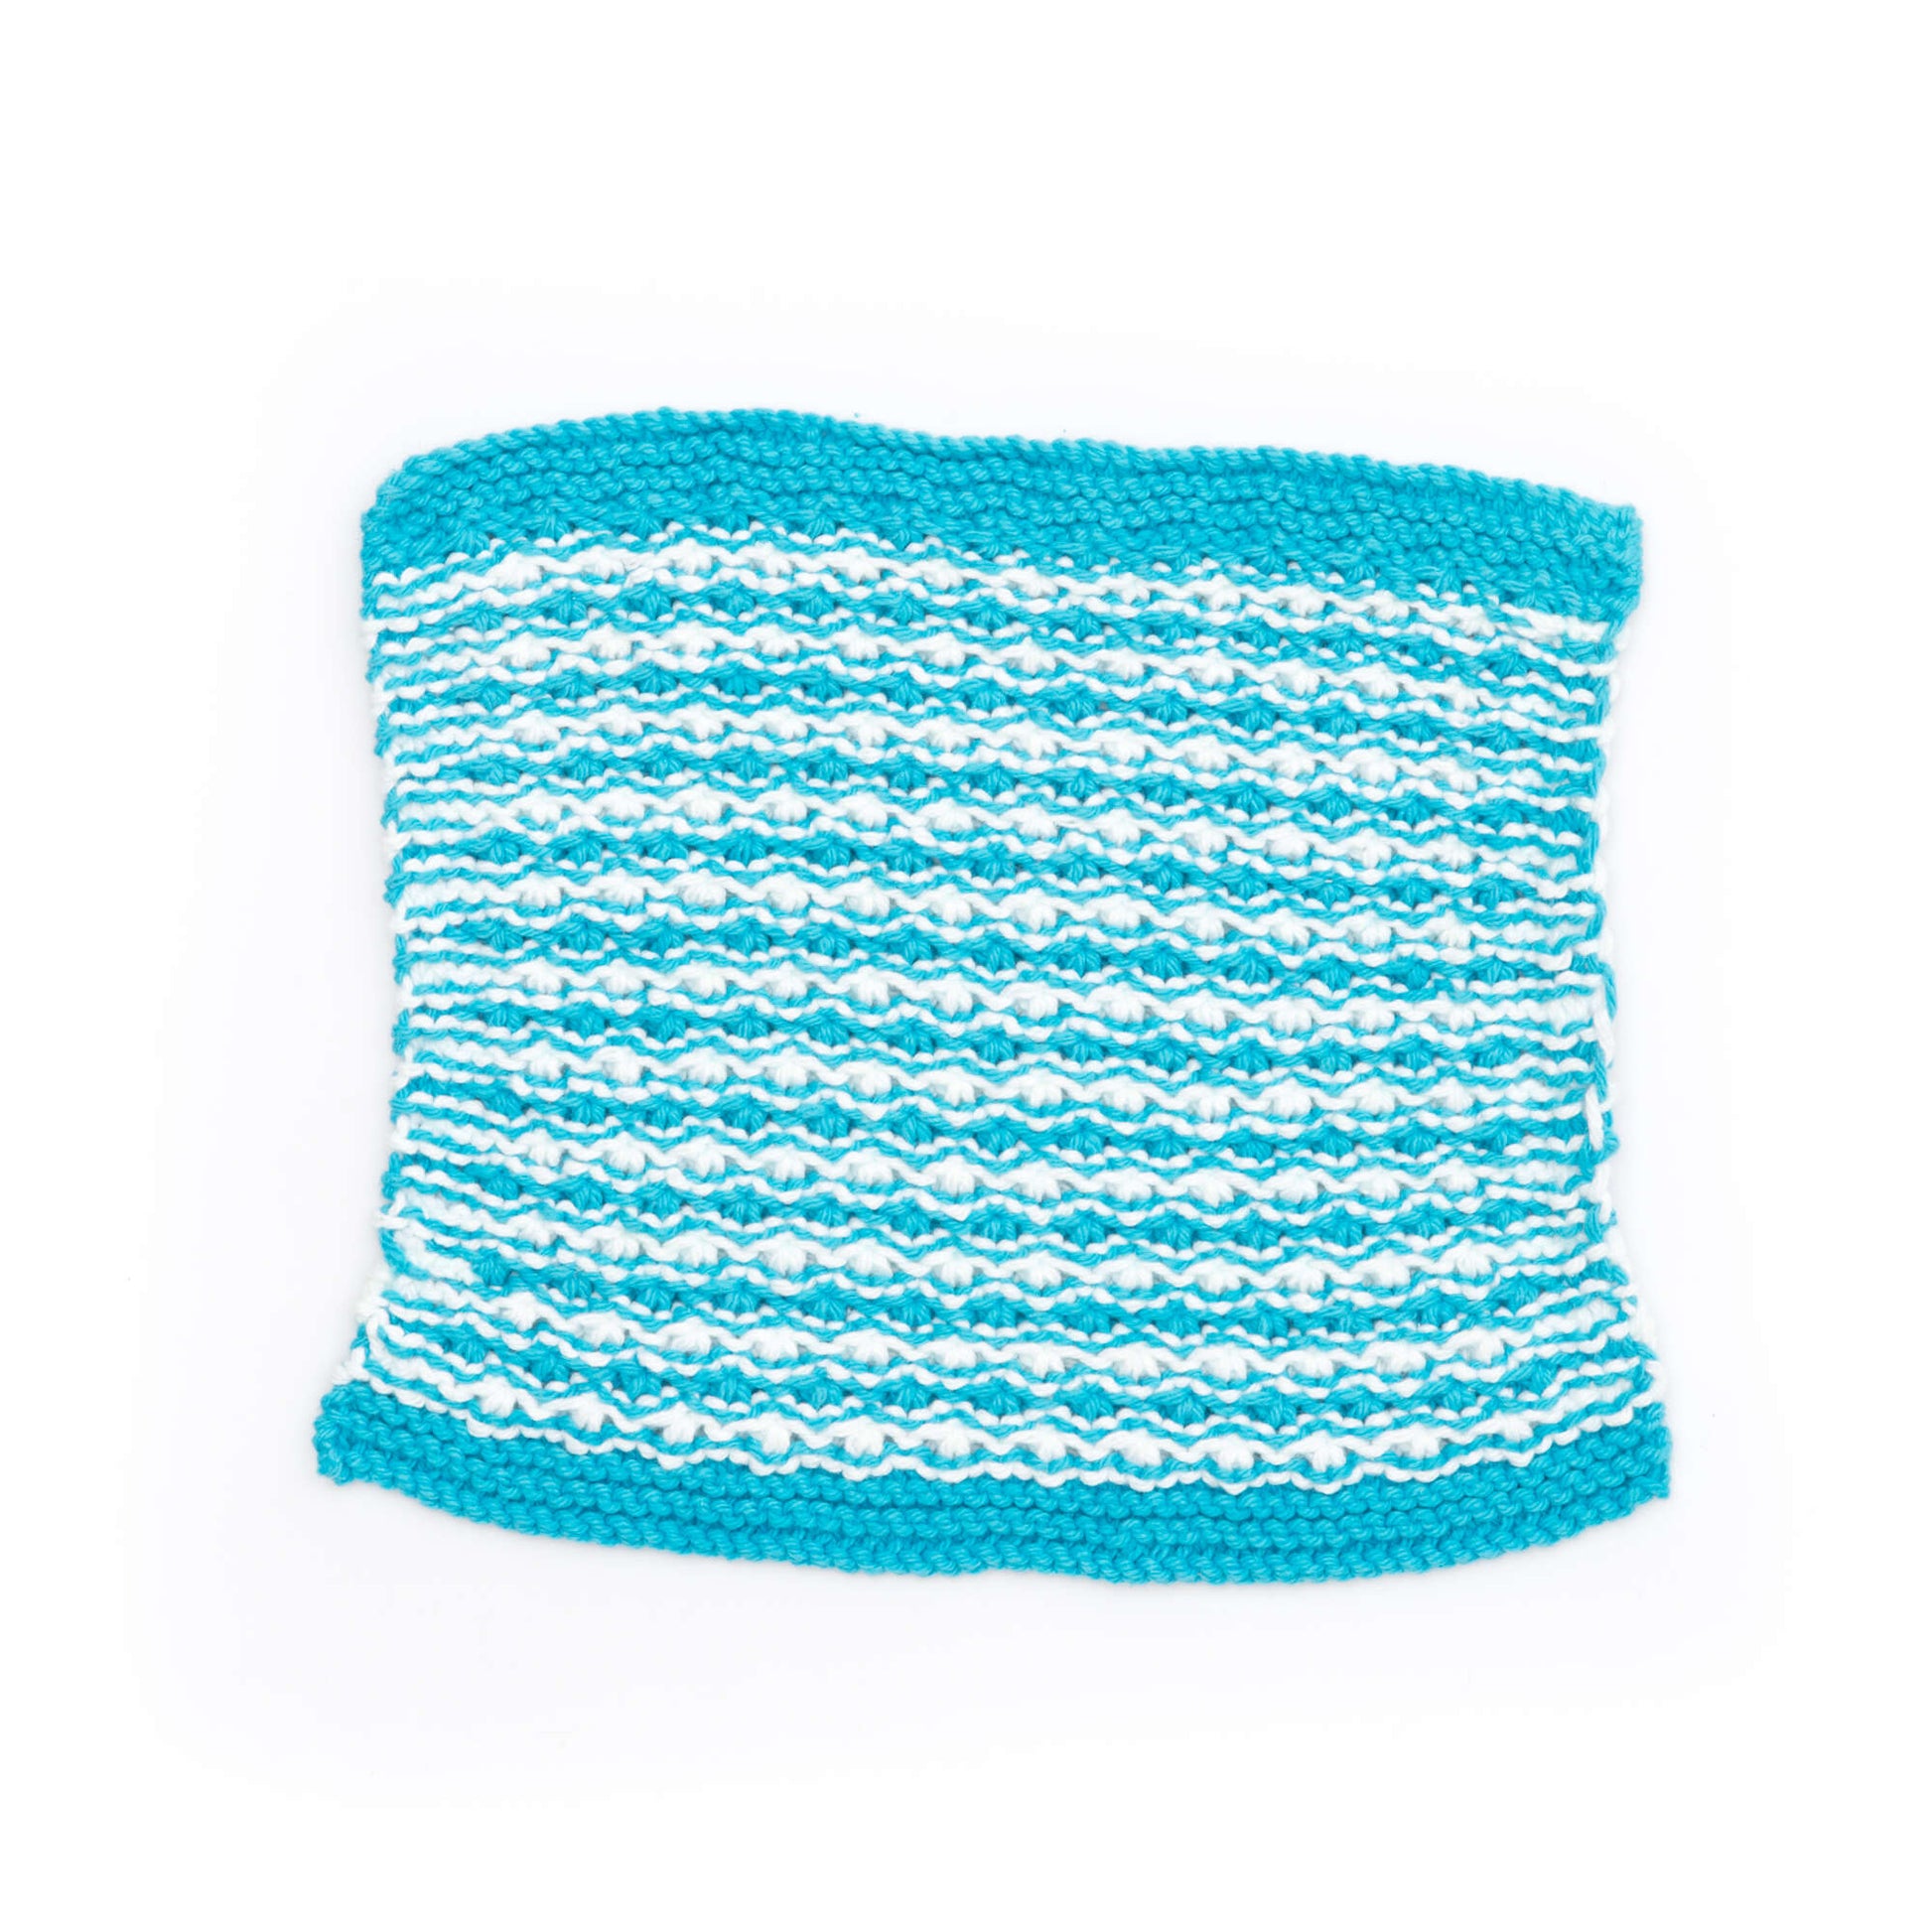 Free Lily Sugar'n Cream Striped Star Stitch Dishcloth Knit Pattern